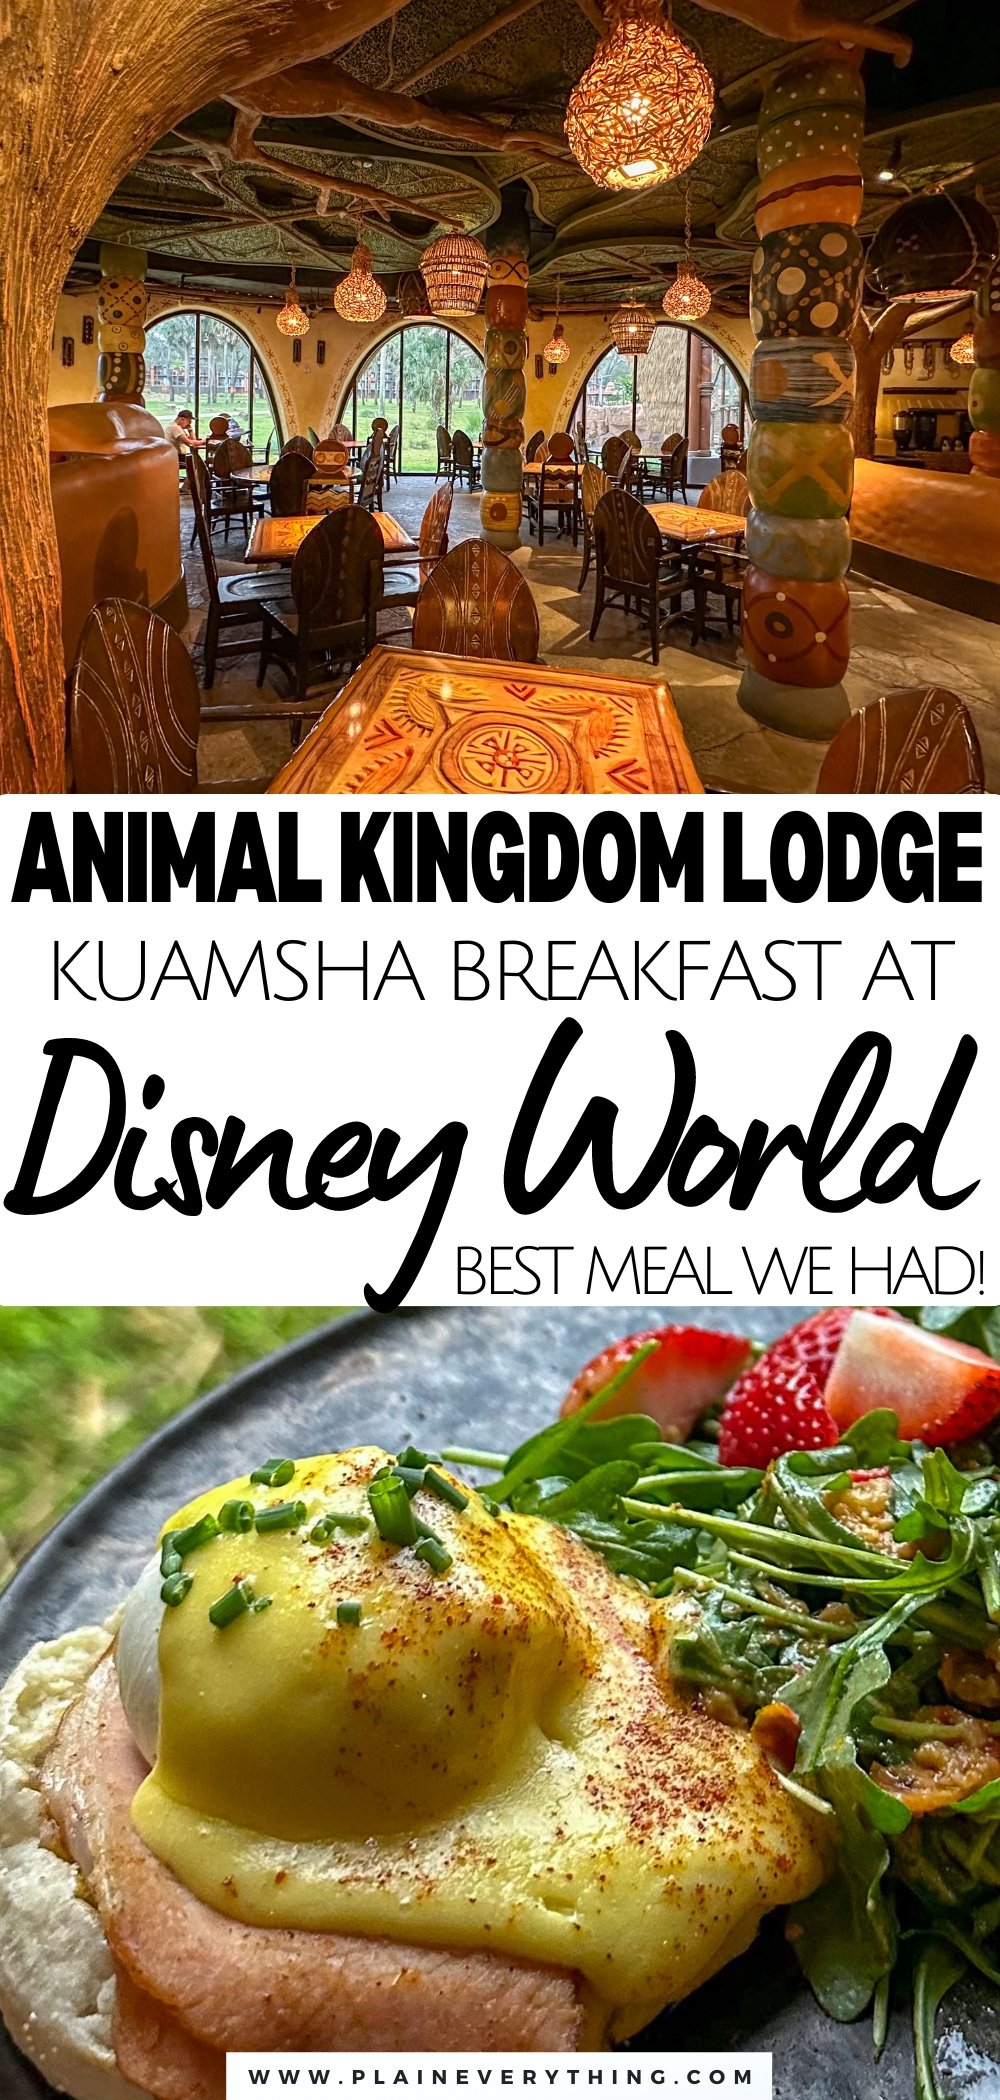 Sanaa Kuamsha Breakfast at Animal Kingdom Lodge